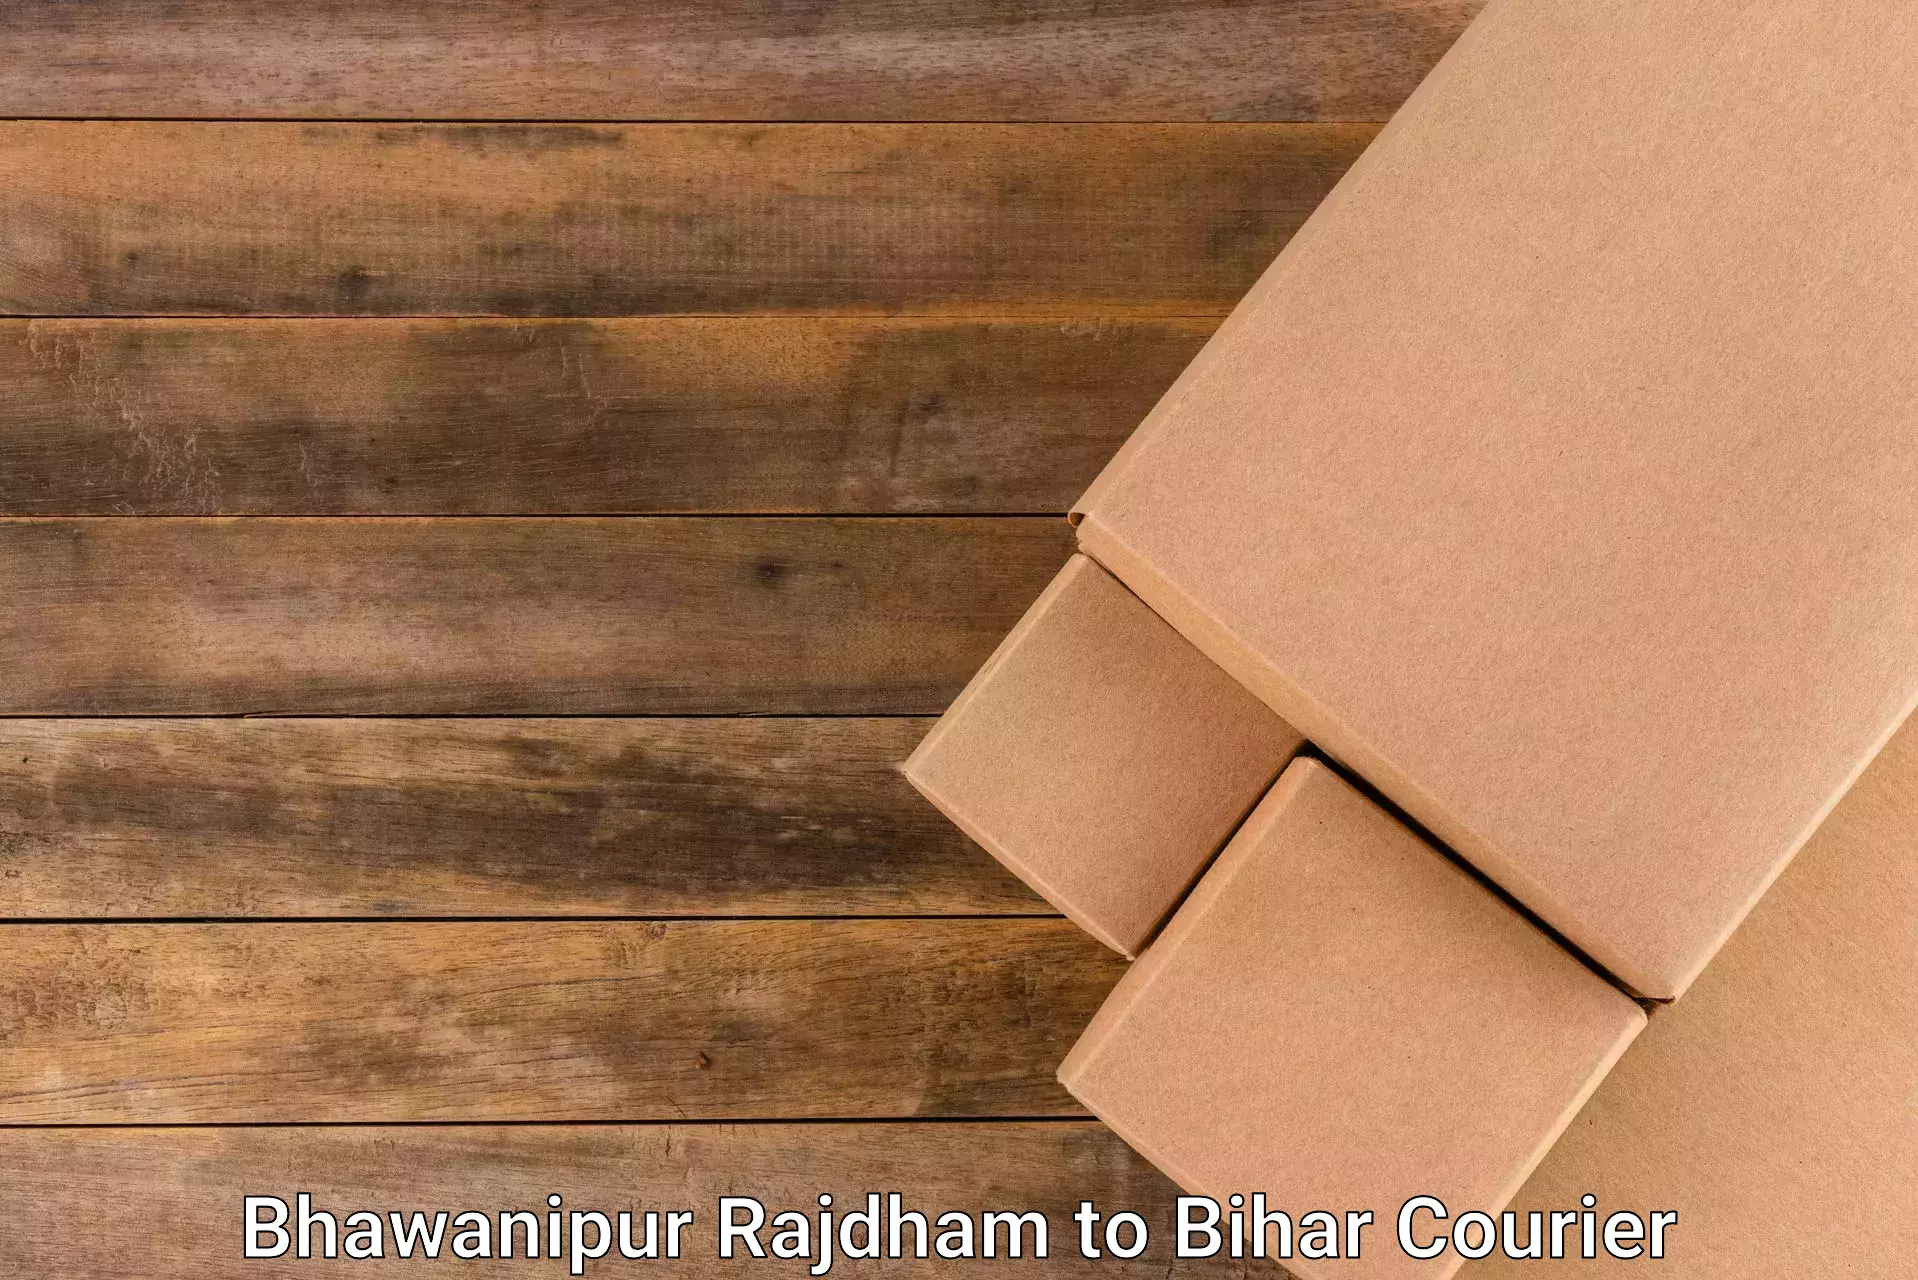 Smart shipping technology Bhawanipur Rajdham to Bihta